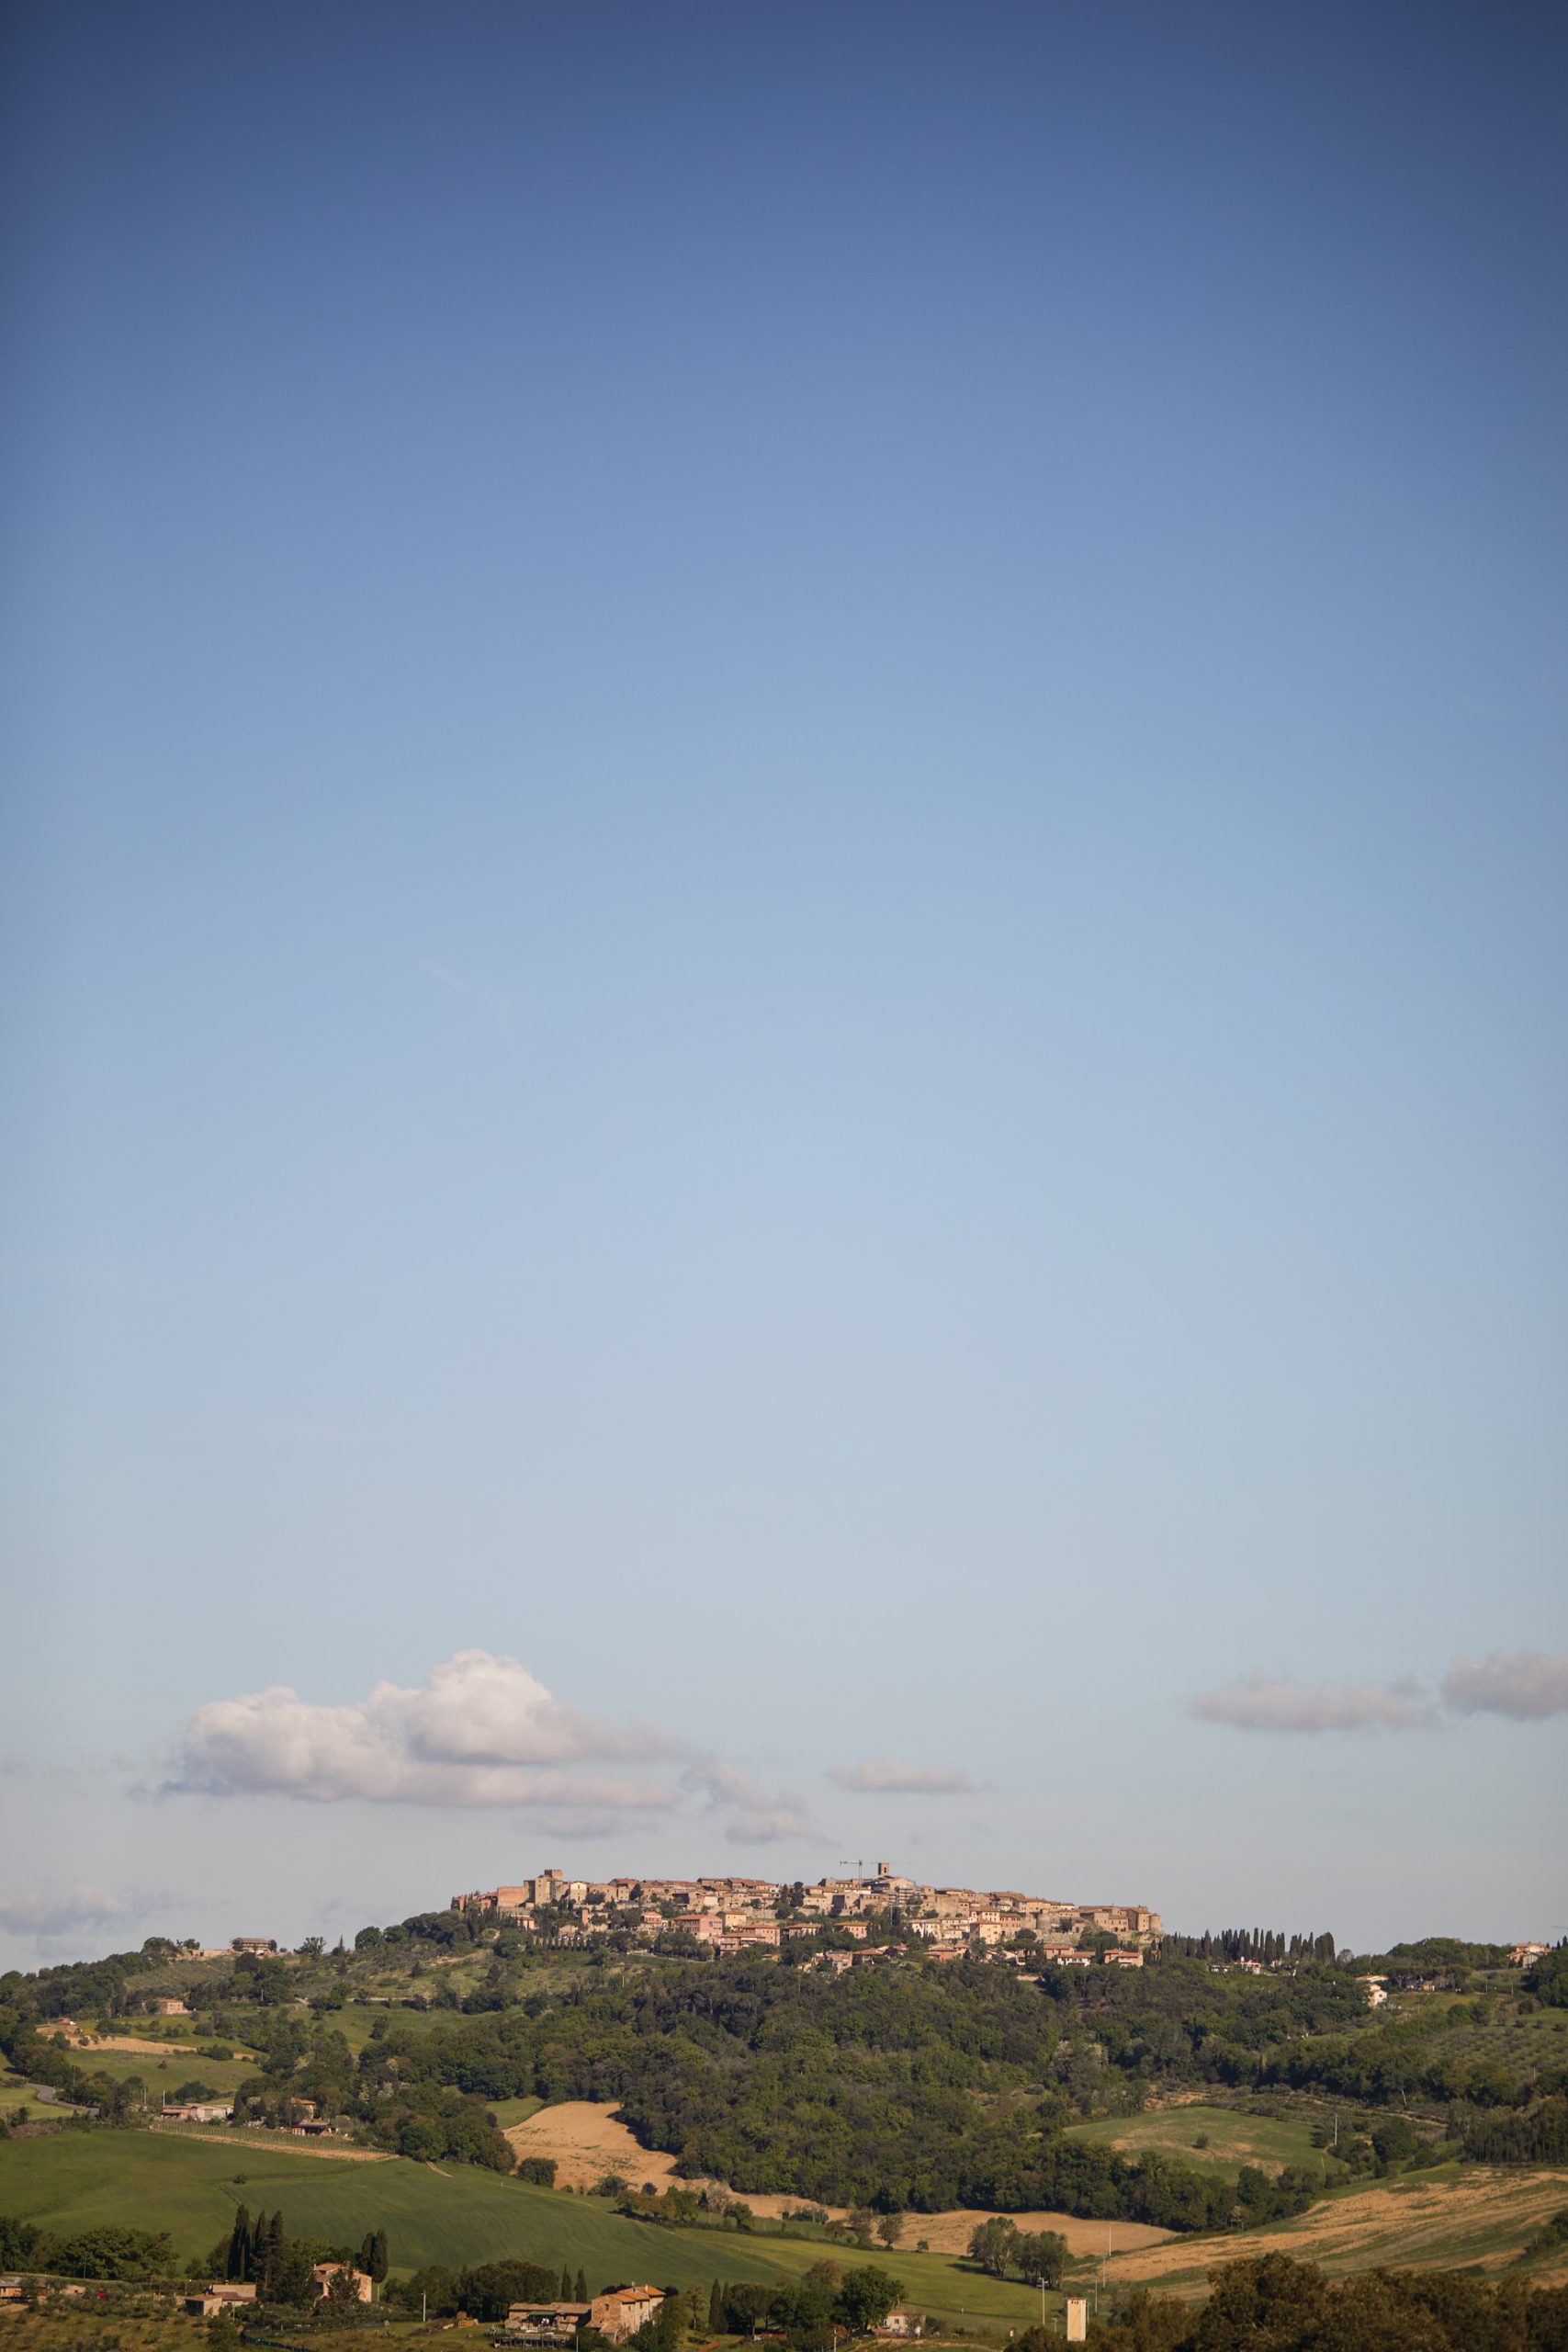 Castello di Casole, A Belmond Hotel, Tuscany - Casole d'Elsa, Italy - View